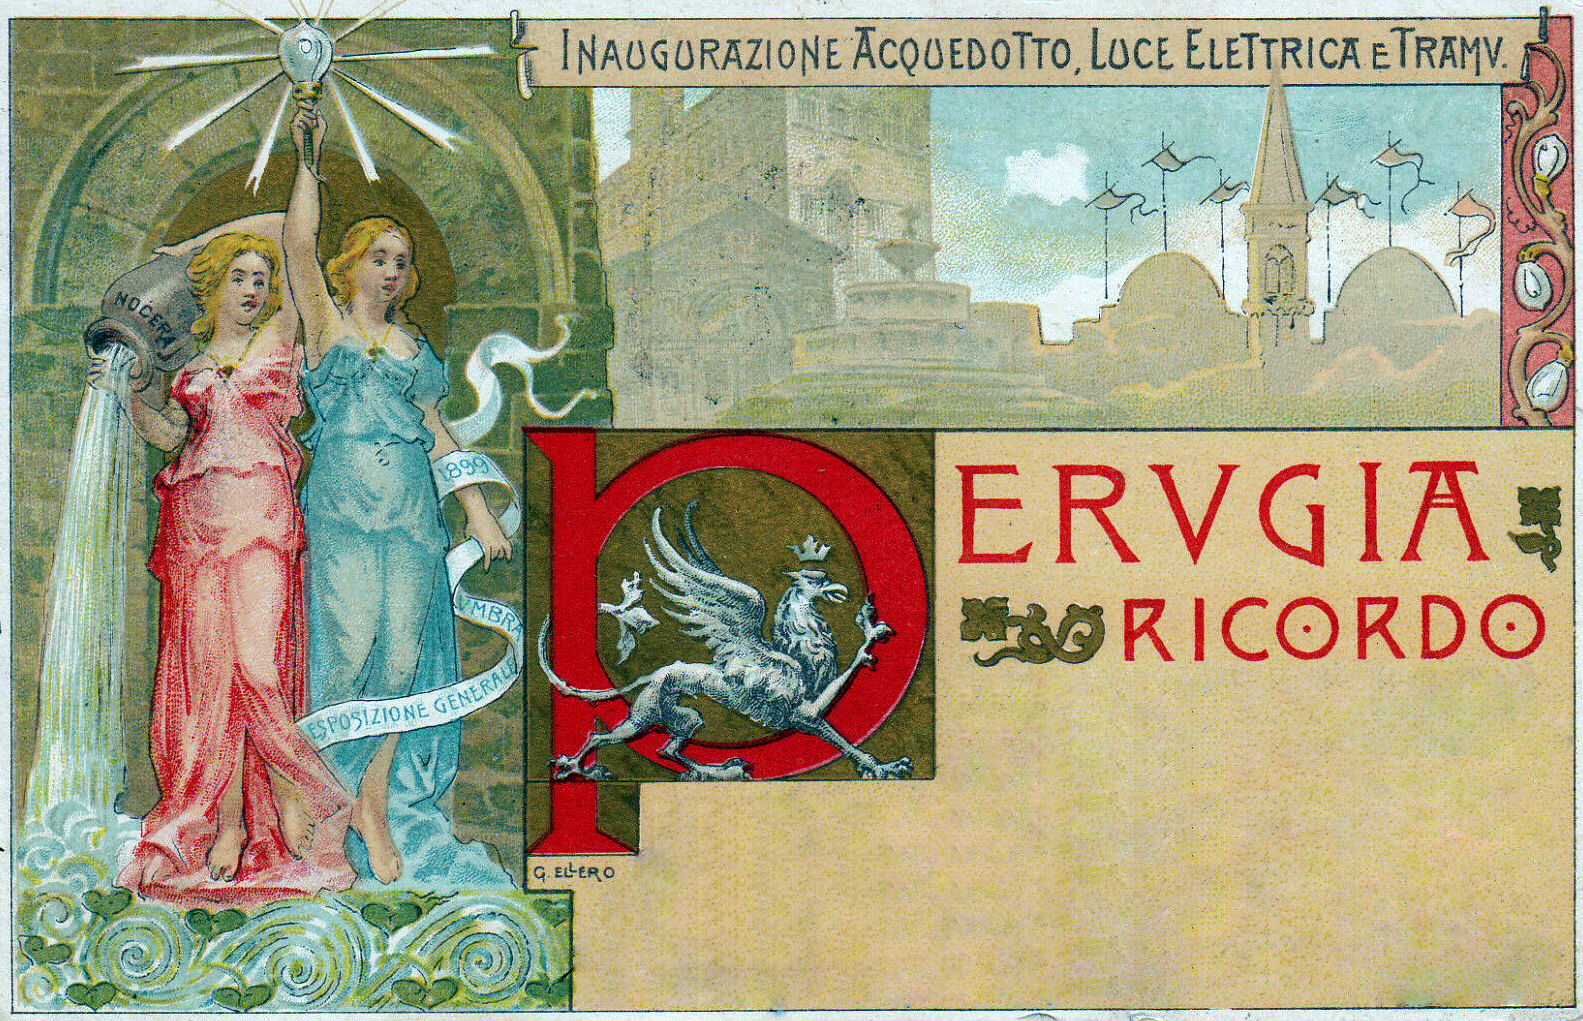 Cartolina per l'inaugurazione dell'acquedotto di Perugia